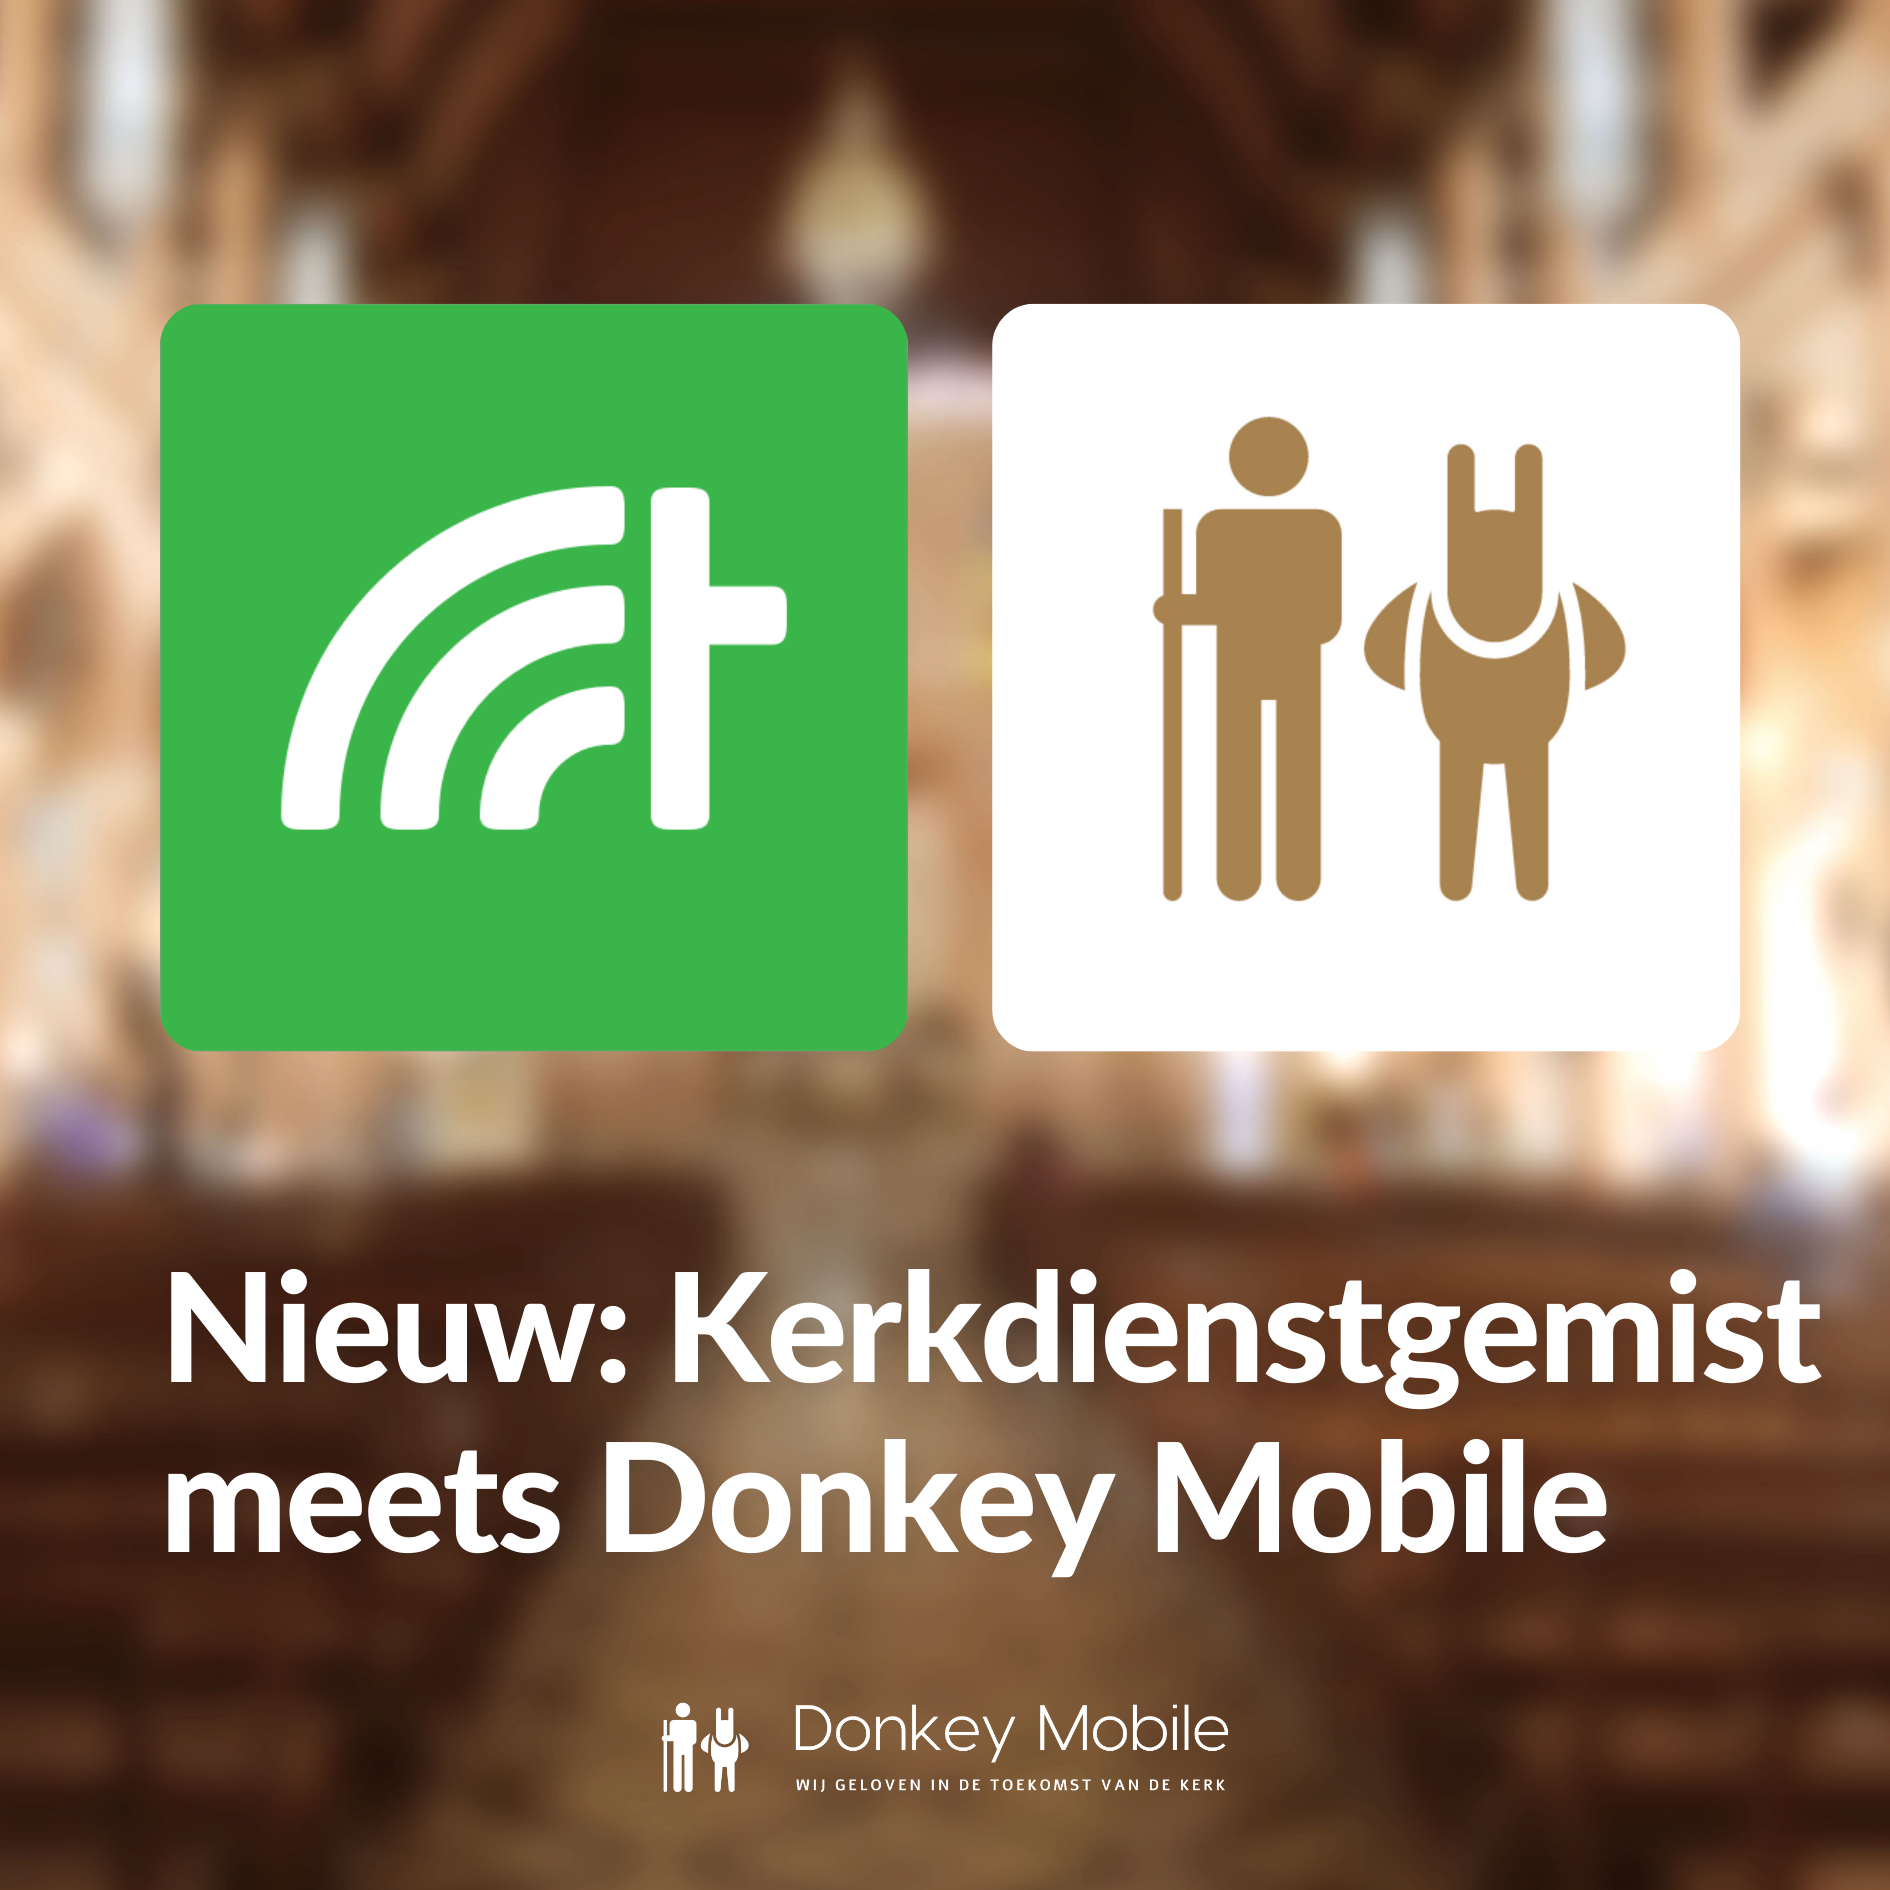 kerkdienstgemist.nl en logo donkey mobile